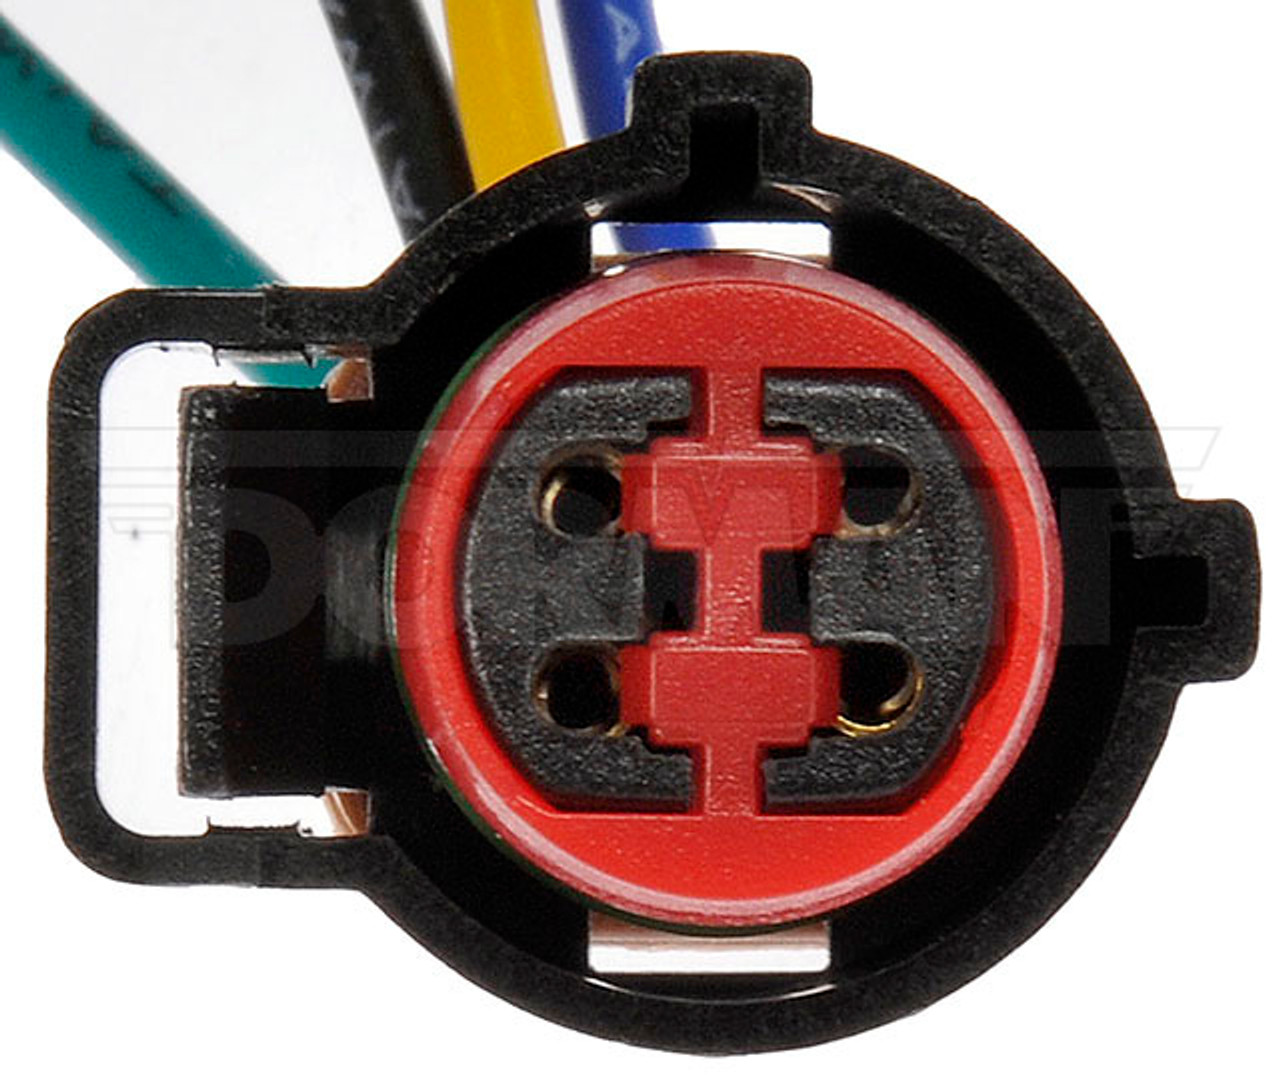 Dorman Vacuum Pump Pigtail Connector